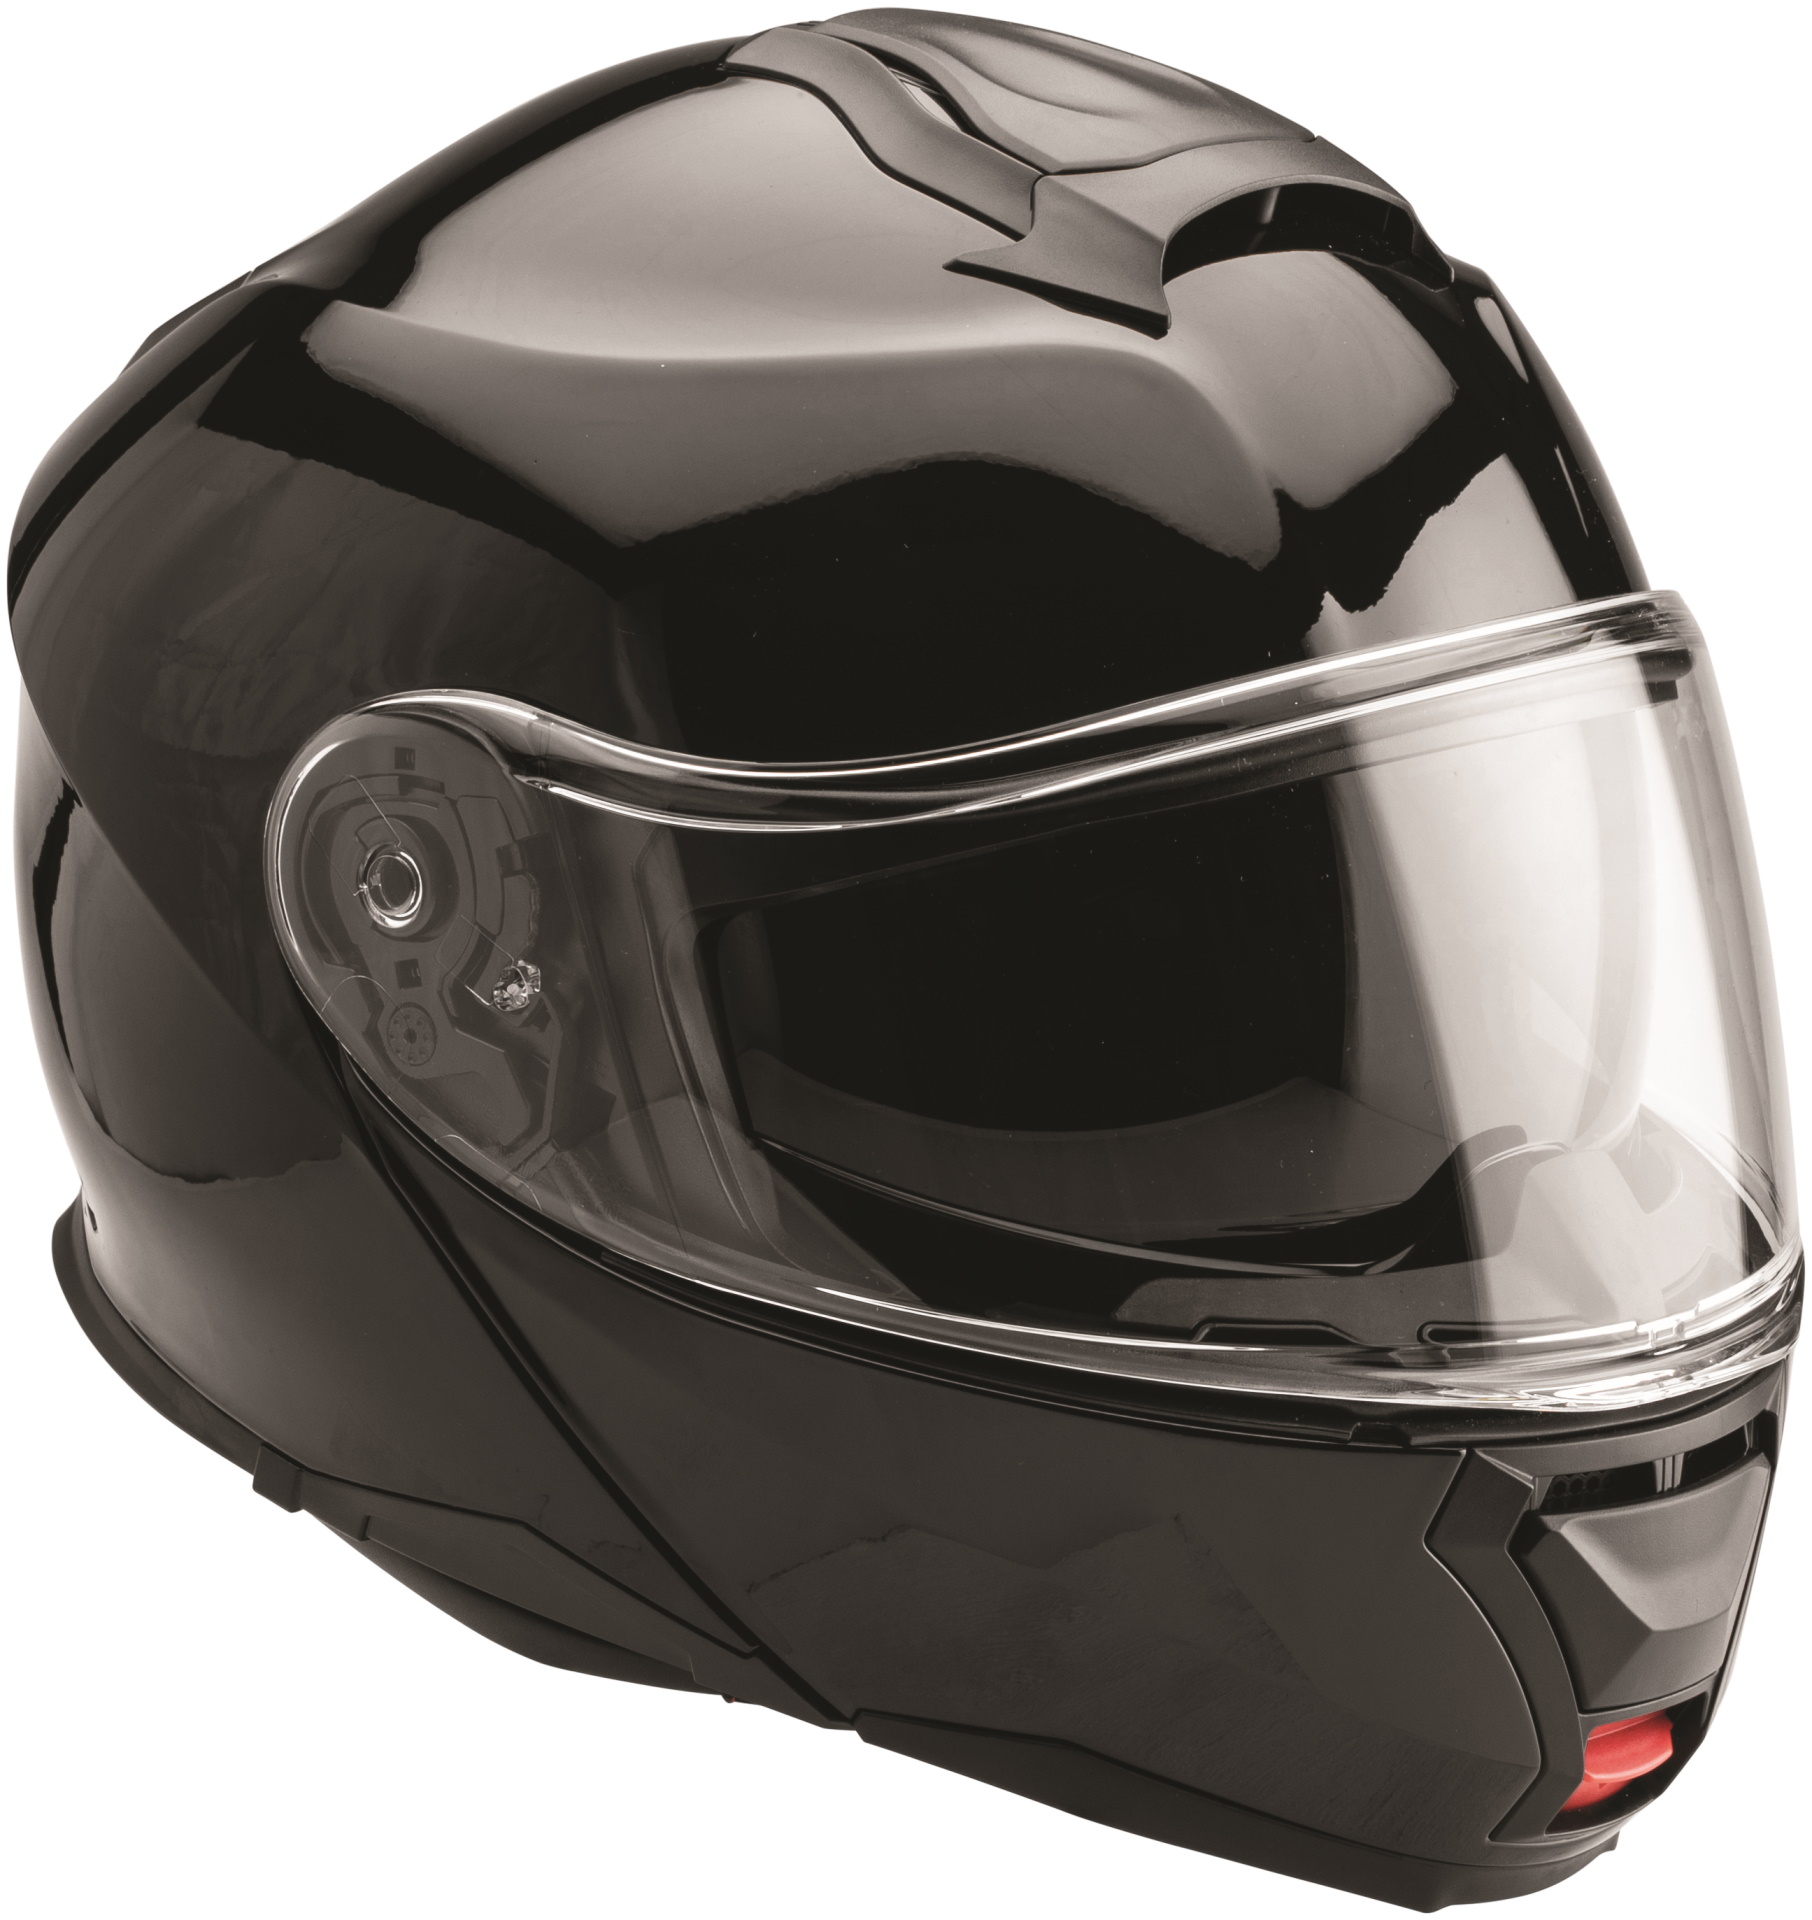 Sensational Ideas Of vulcan motorcycle helmet Gif